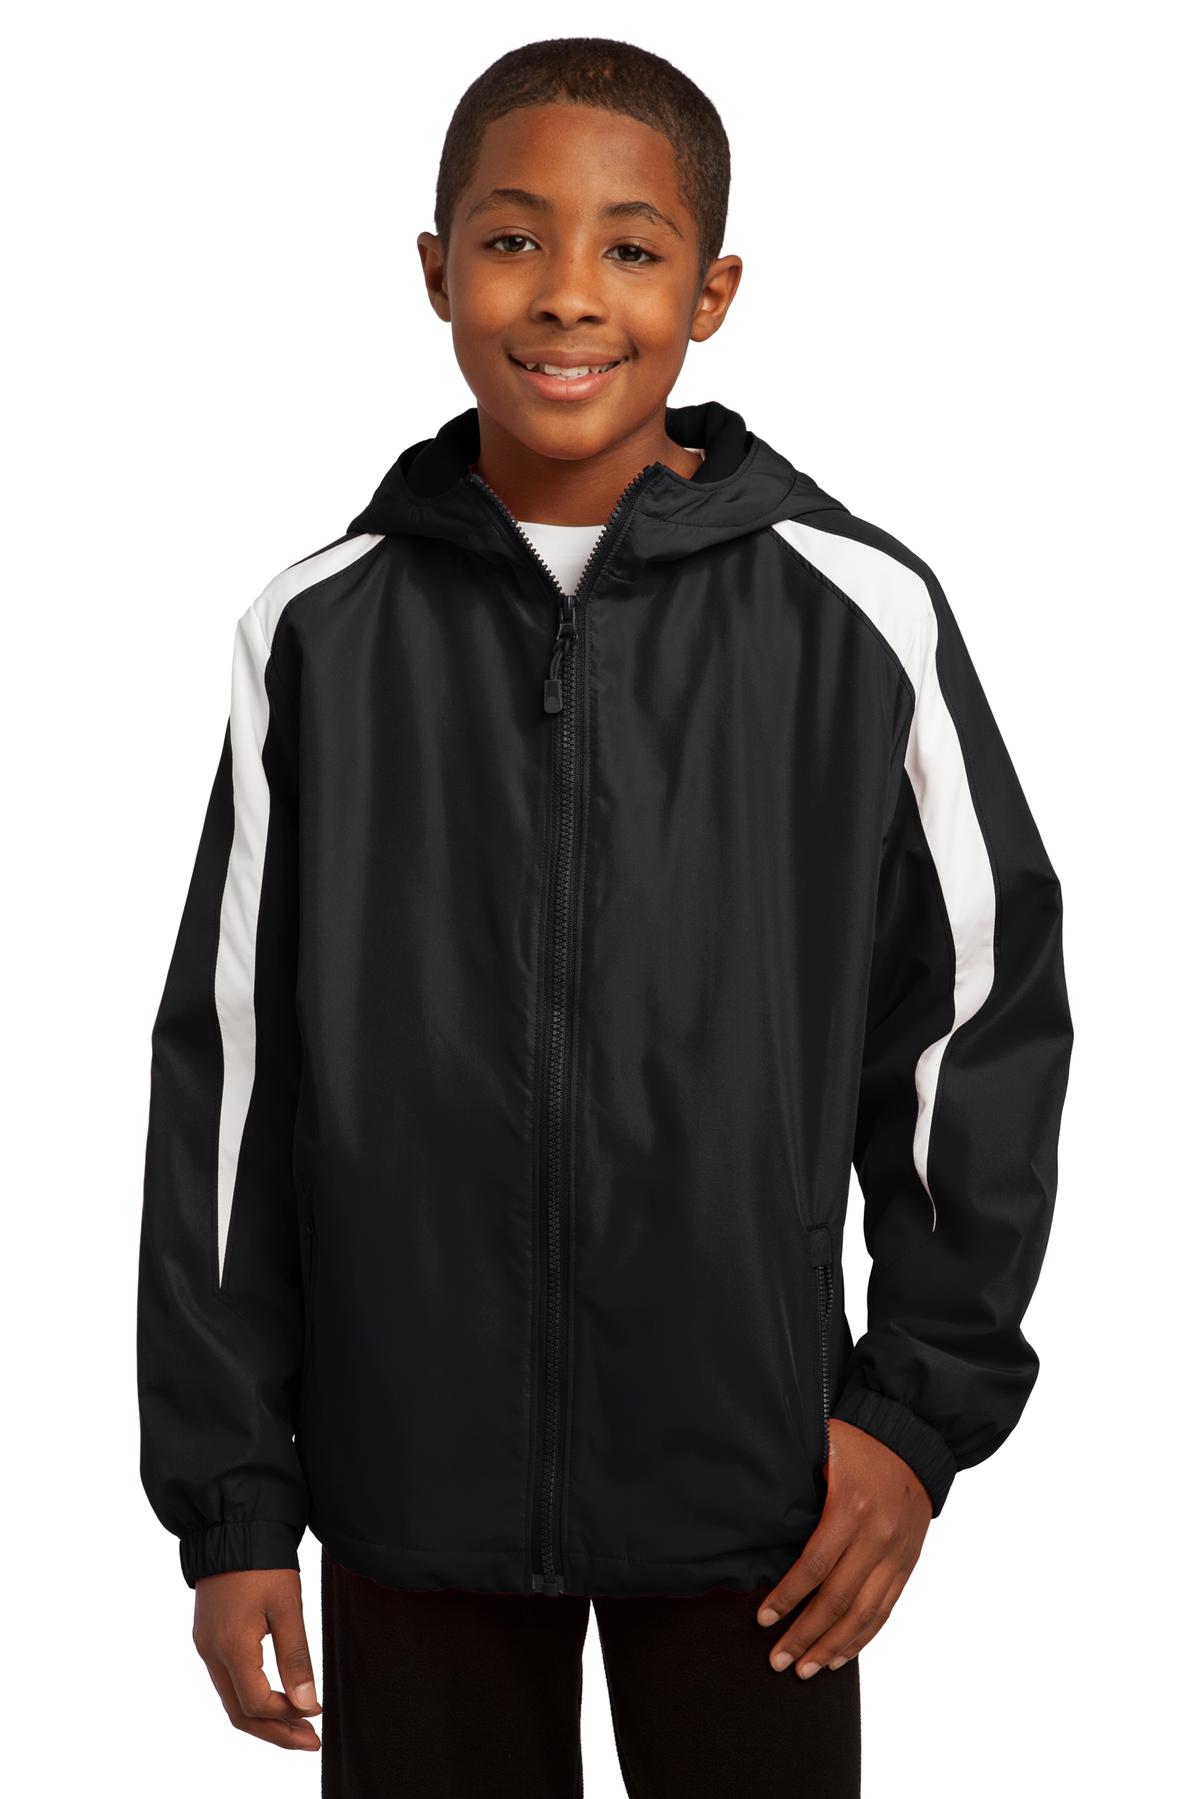 Sport-Tek Hospitality Youth Activewear & Outerwear ® Youth Fleece-Lined Colorblock Jacket.-Sport-Tek